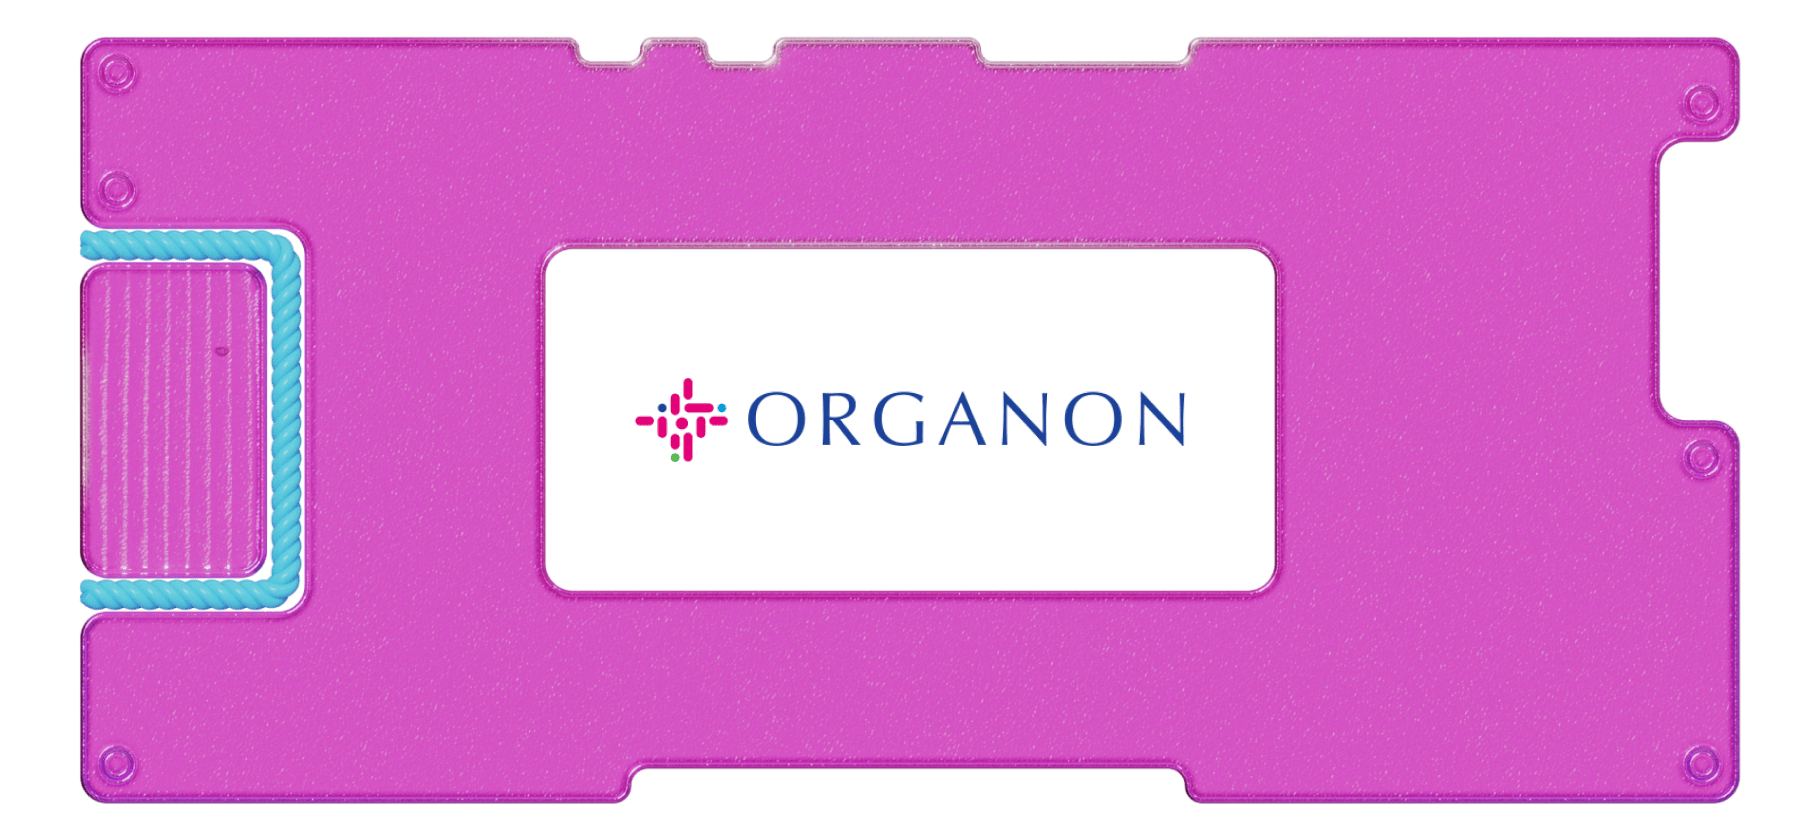 Обзор Organon: инвестируем в индустрию женского здоровья